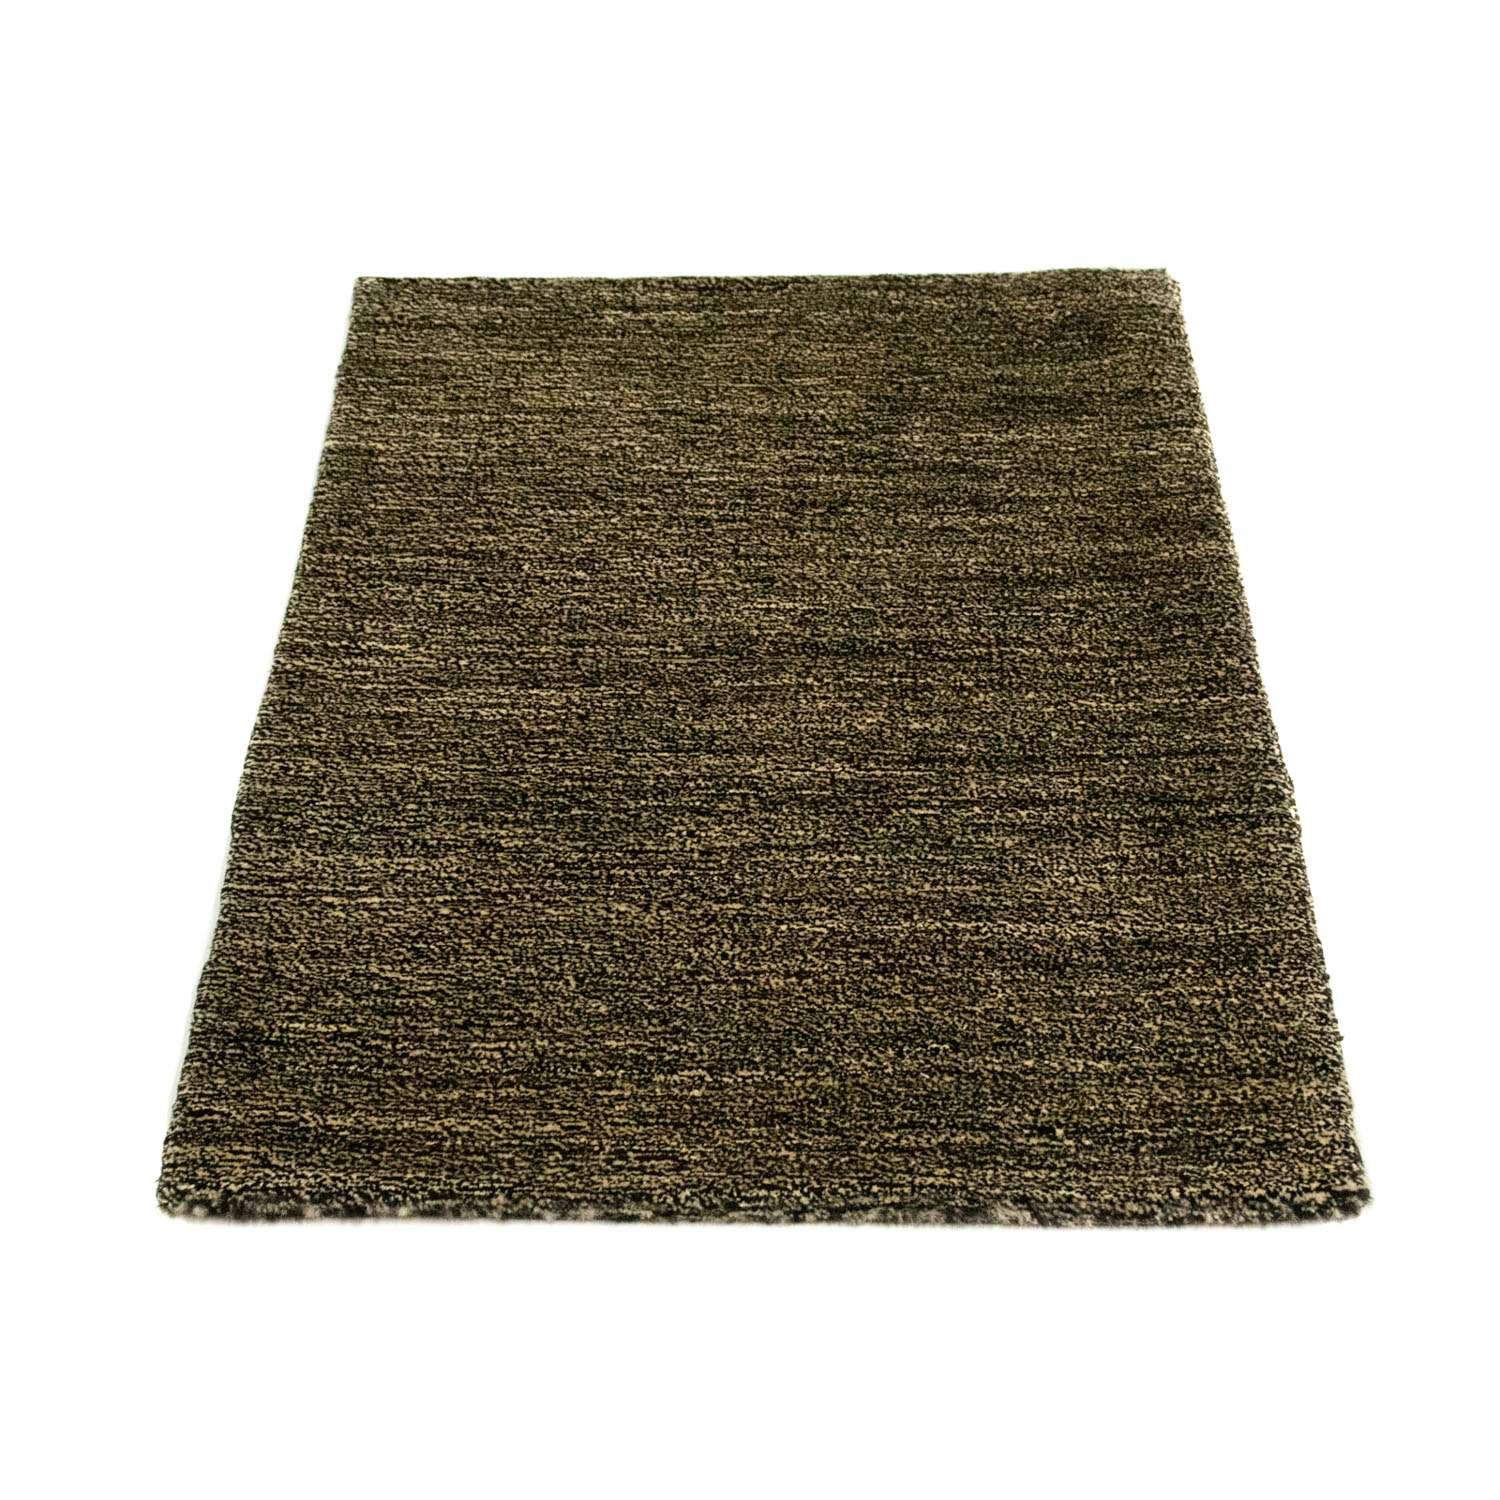 Gabbeh koberec - Indus - 93 x 64 cm - mátově zelená